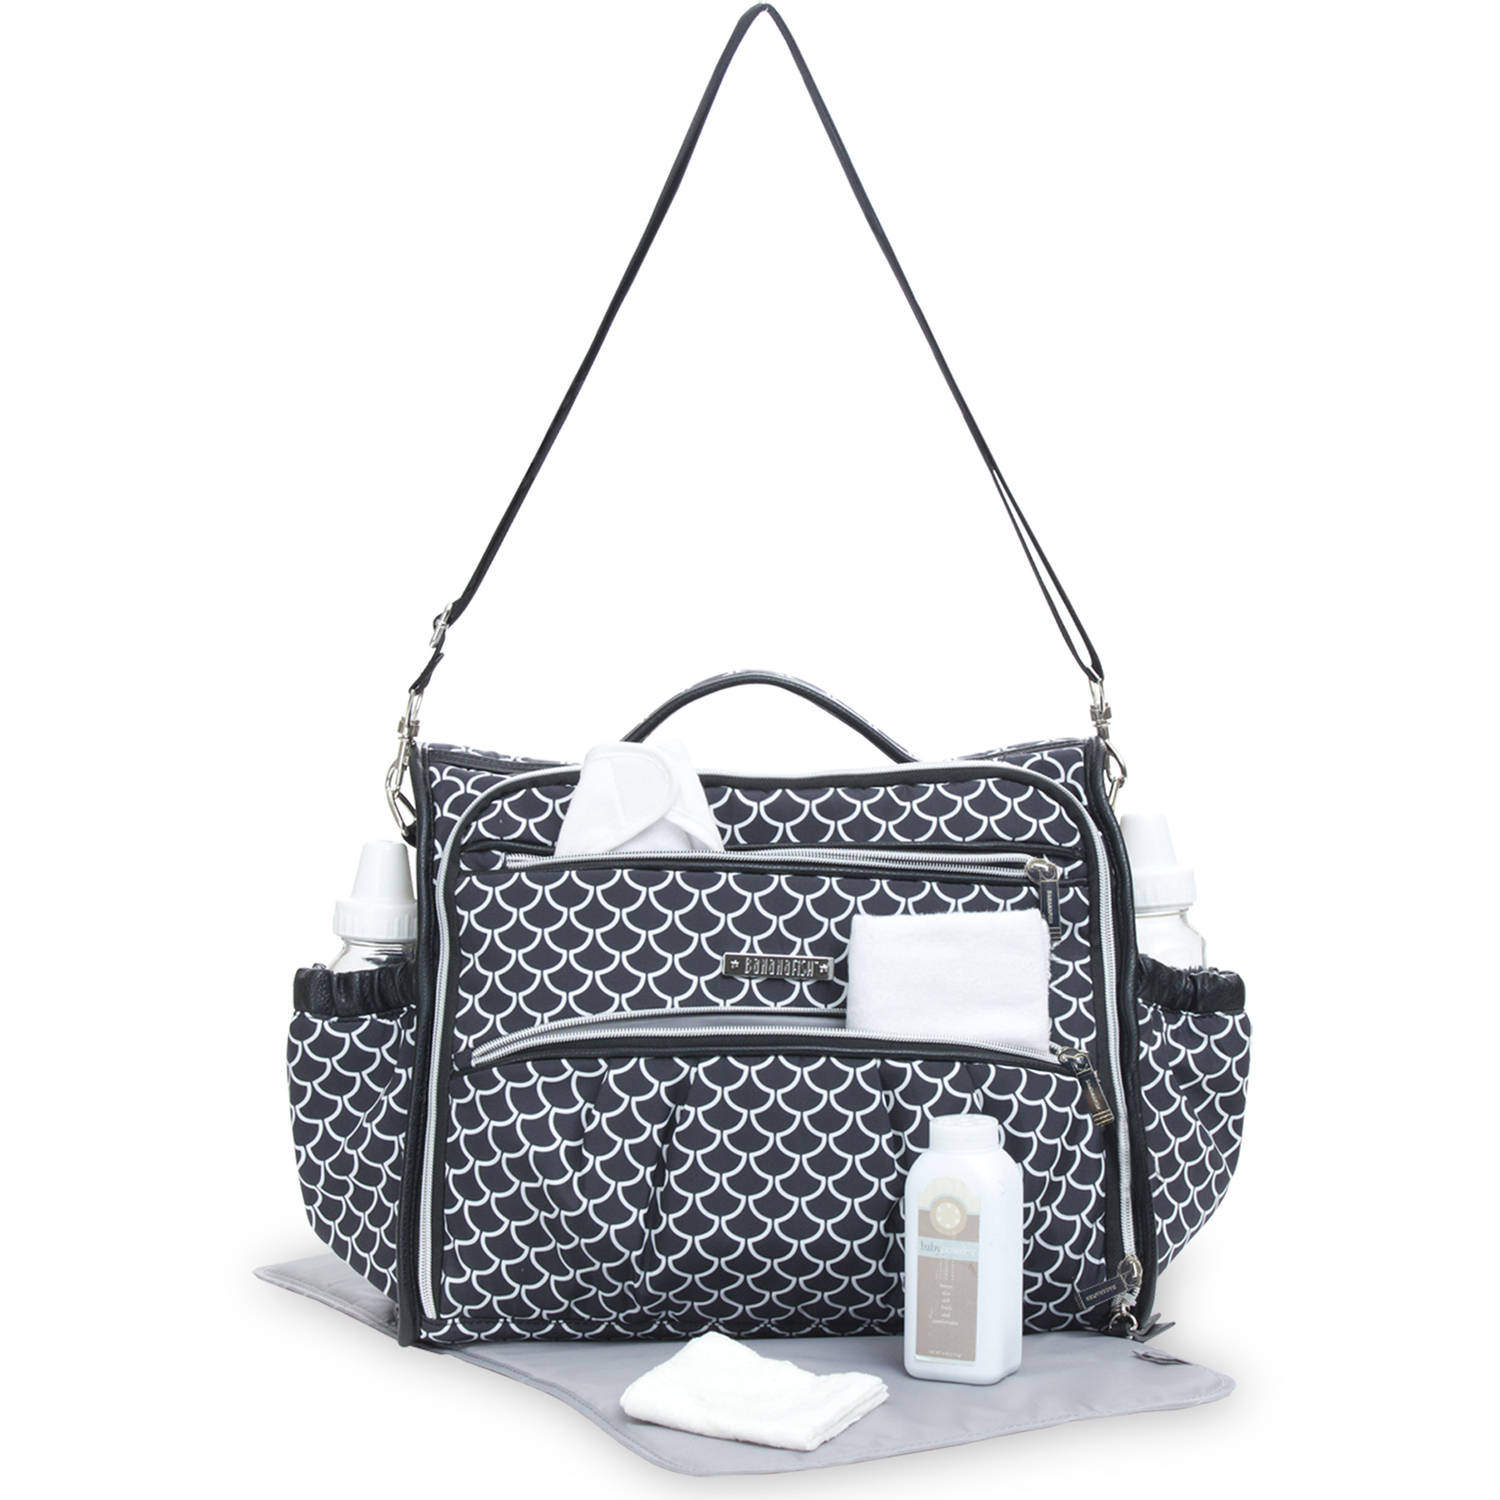 Bananafish Studio Adjustable Shoulder Strap Zipper Pockets Messenger Diaper Bag, Black and White - image 4 of 7